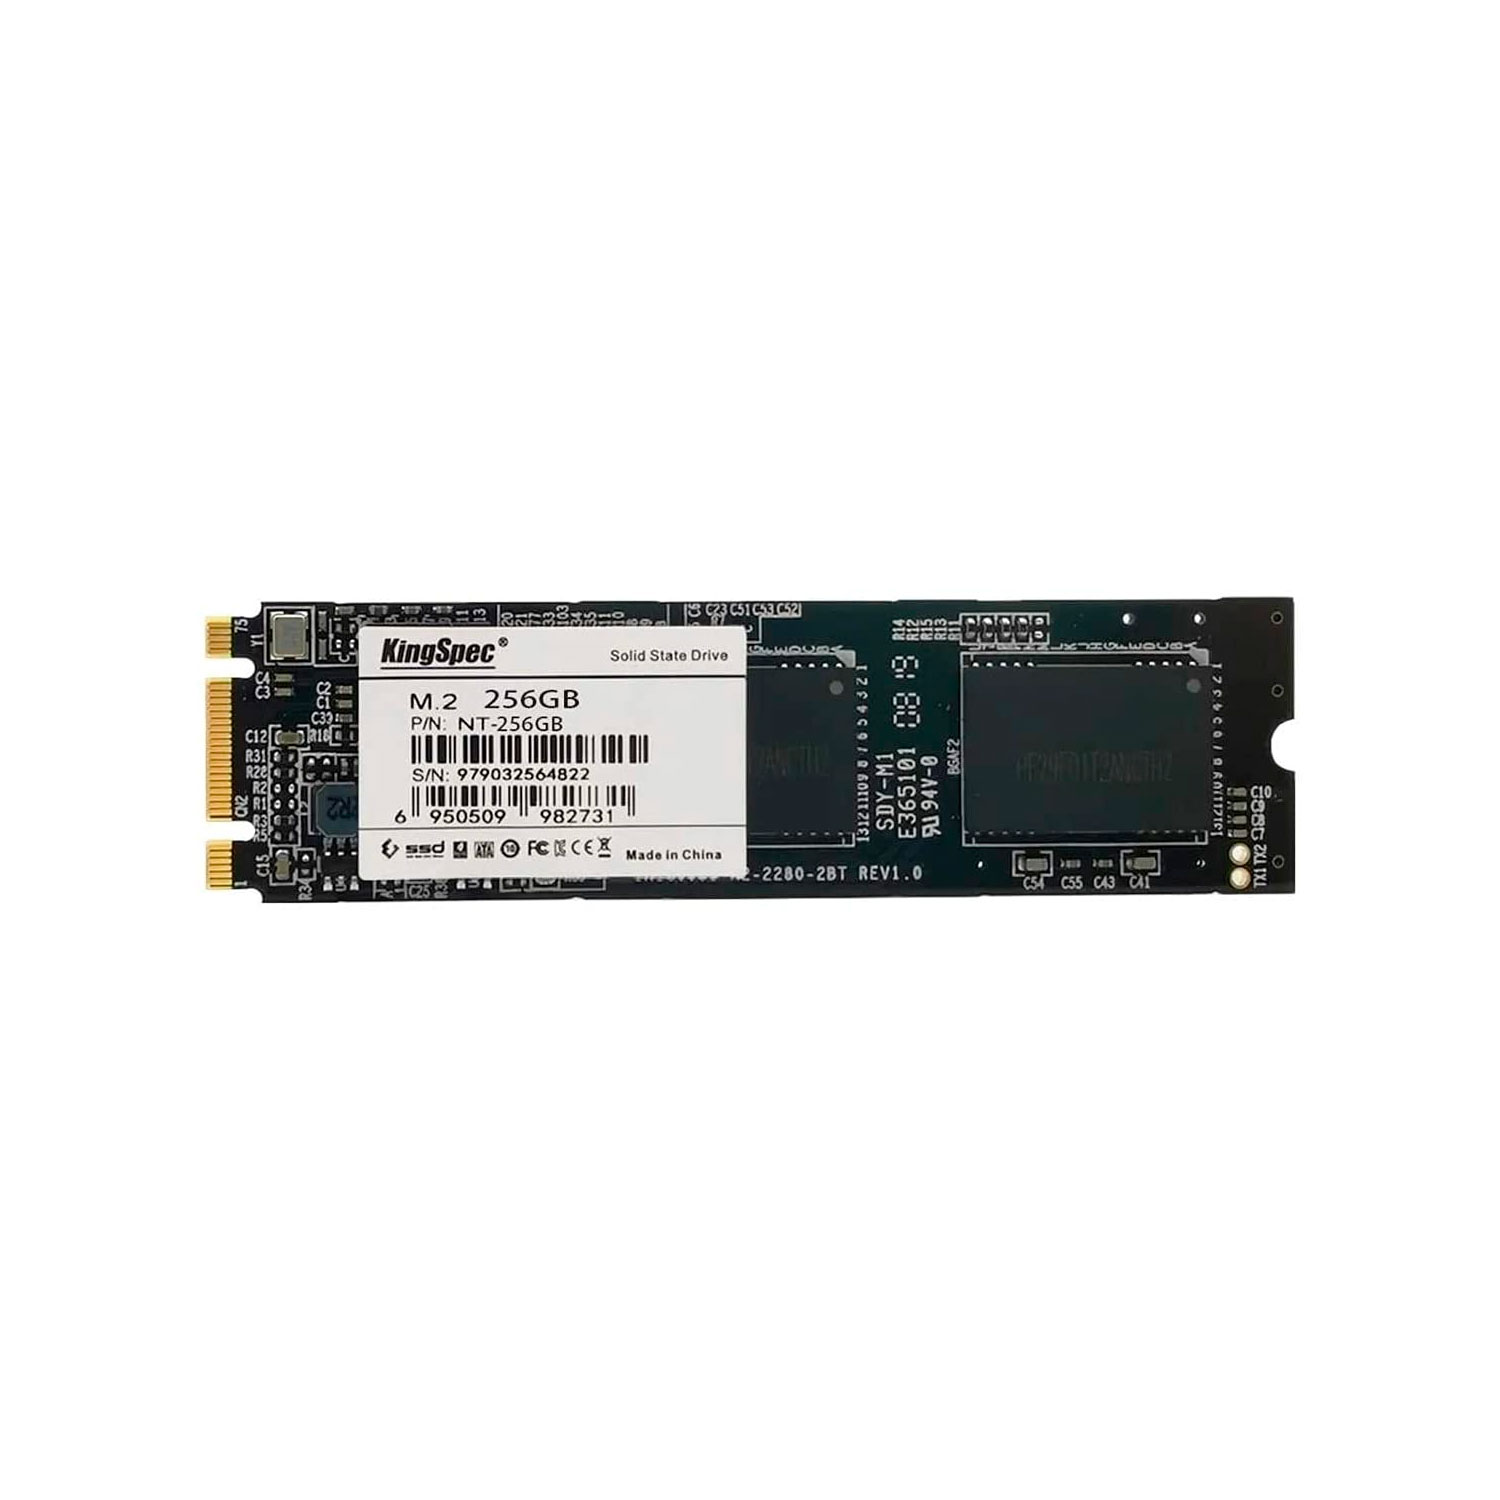 SSD M.2 KingSpec 256GB / 2280 / SATA 3 - (NT-256)